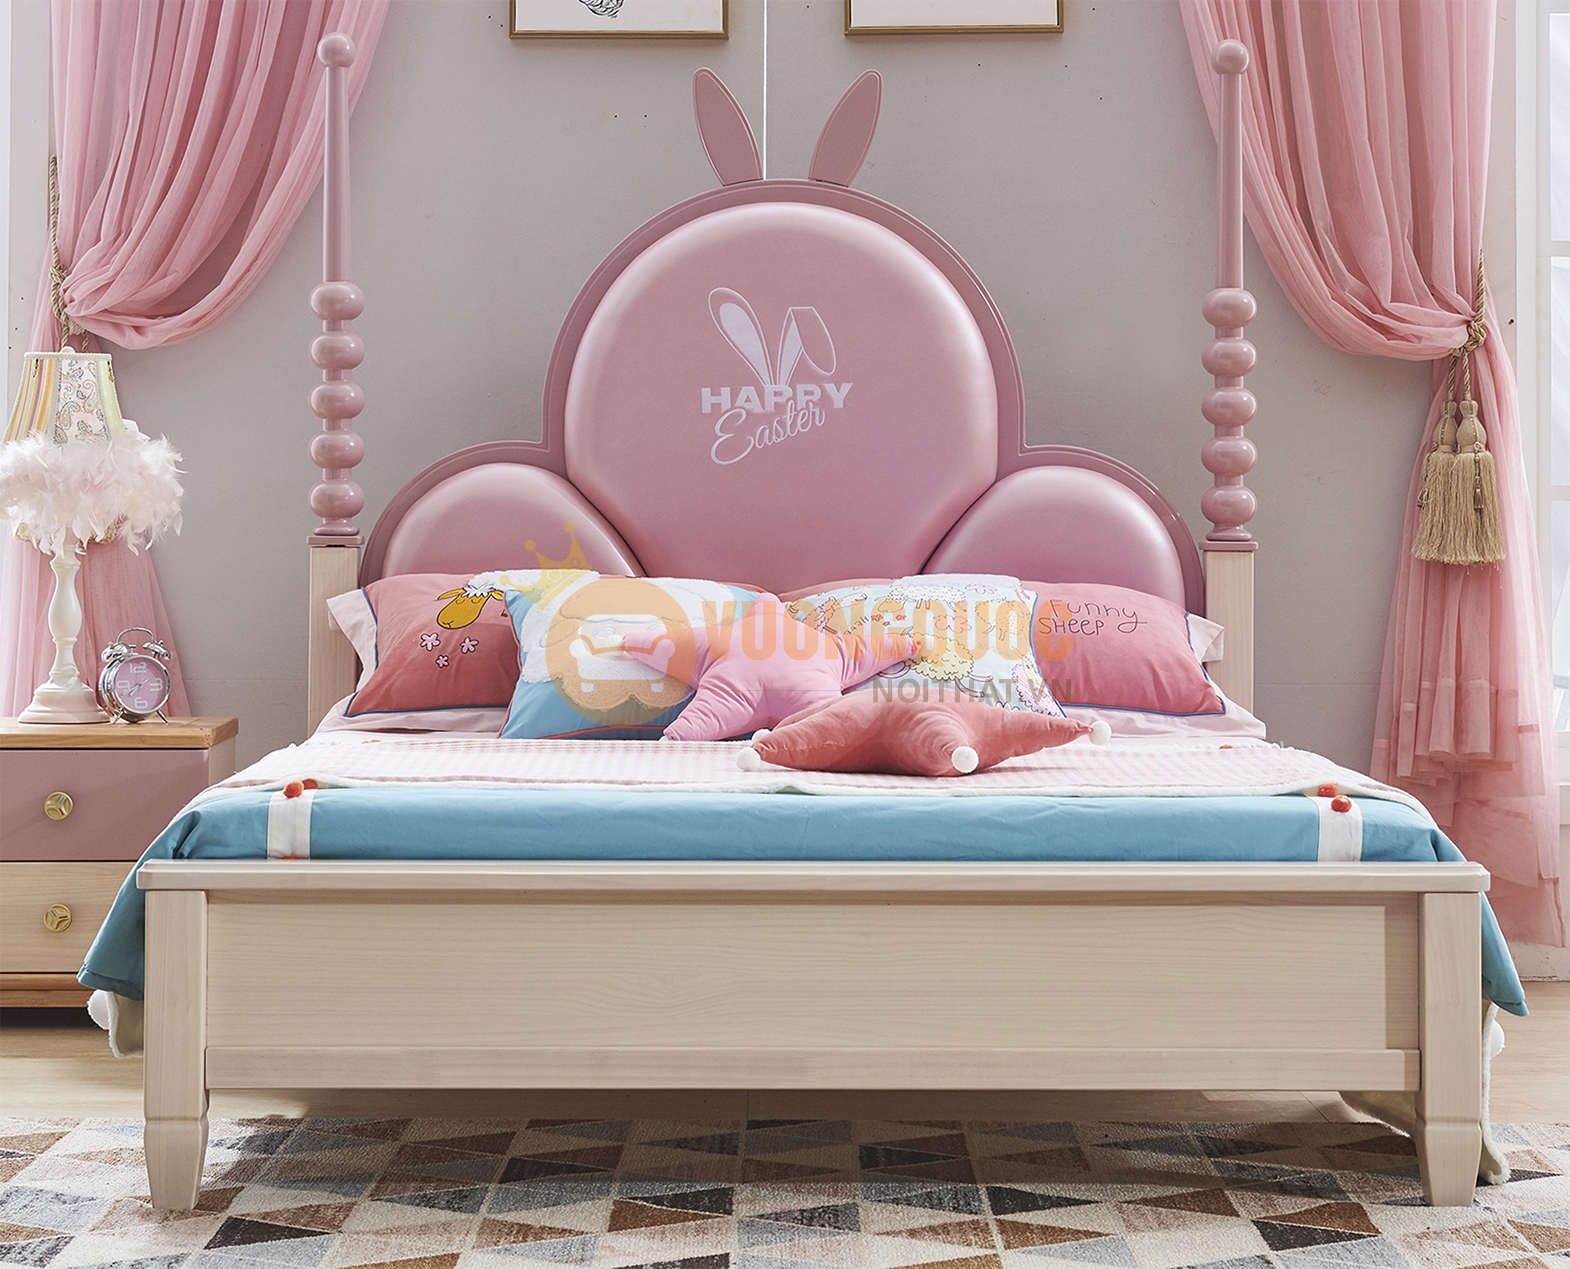 Giường ngủ cho bé gái xinh xắn JVNA613G: Với mẫu giường ngủ độc đáo JVNA613G, bé gái của bạn sẽ có một không gian ngủ đẹp mắt và ấn tượng. Chiếc giường ngủ được thiết kế kỹ lưỡng, có hình dáng độc đáo và được trang trí với các chi tiết xinh xắn, mang đến một không gian ngủ thật đáng yêu cho bé của bạn.